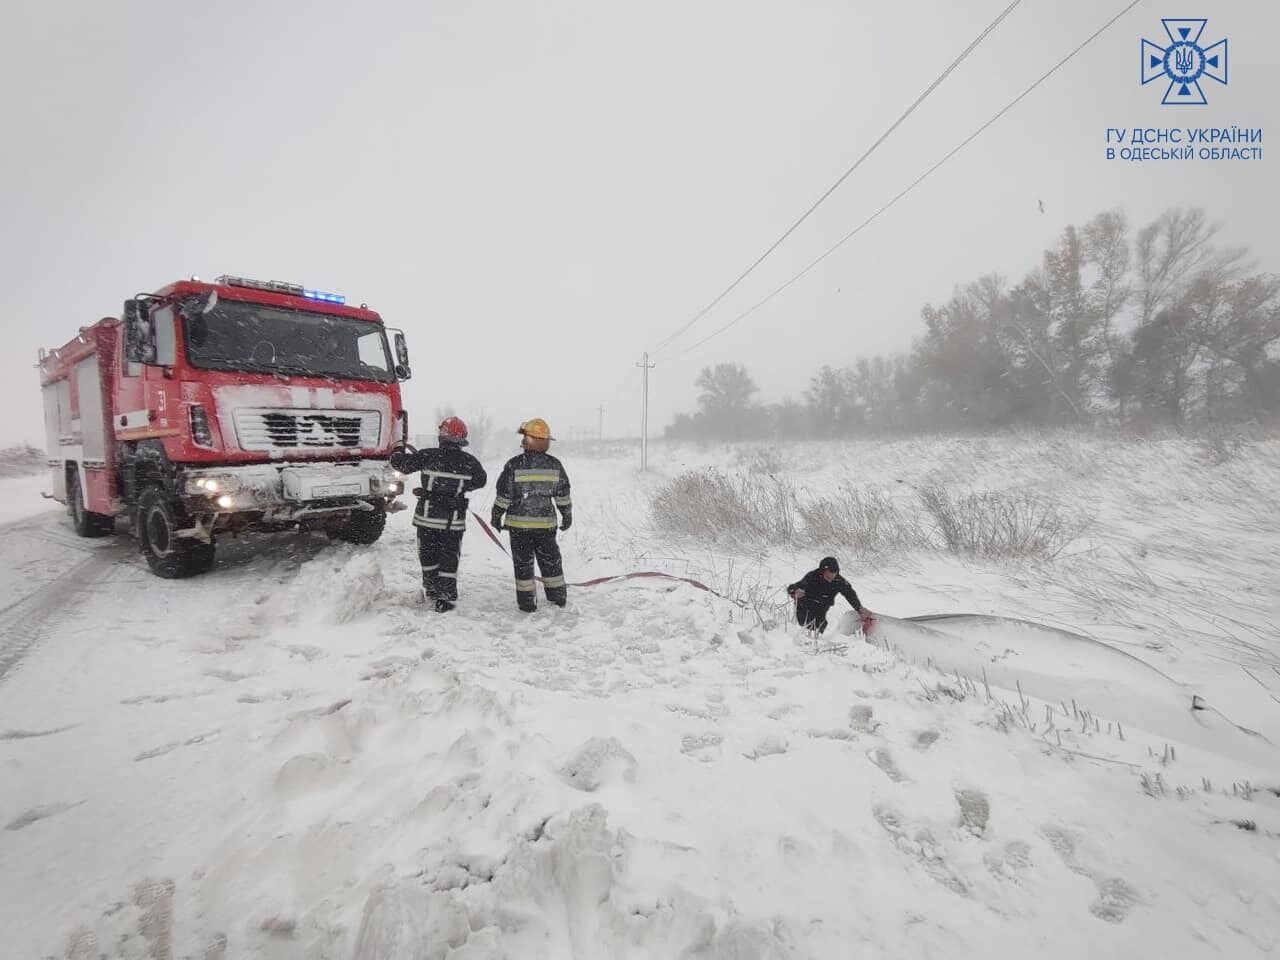 "Снежный апокалипсис": на трассе Киев – Одесса из-за сугробов застрял транспорт, спасателям удалось освободить более 500 авто. Фото и видео